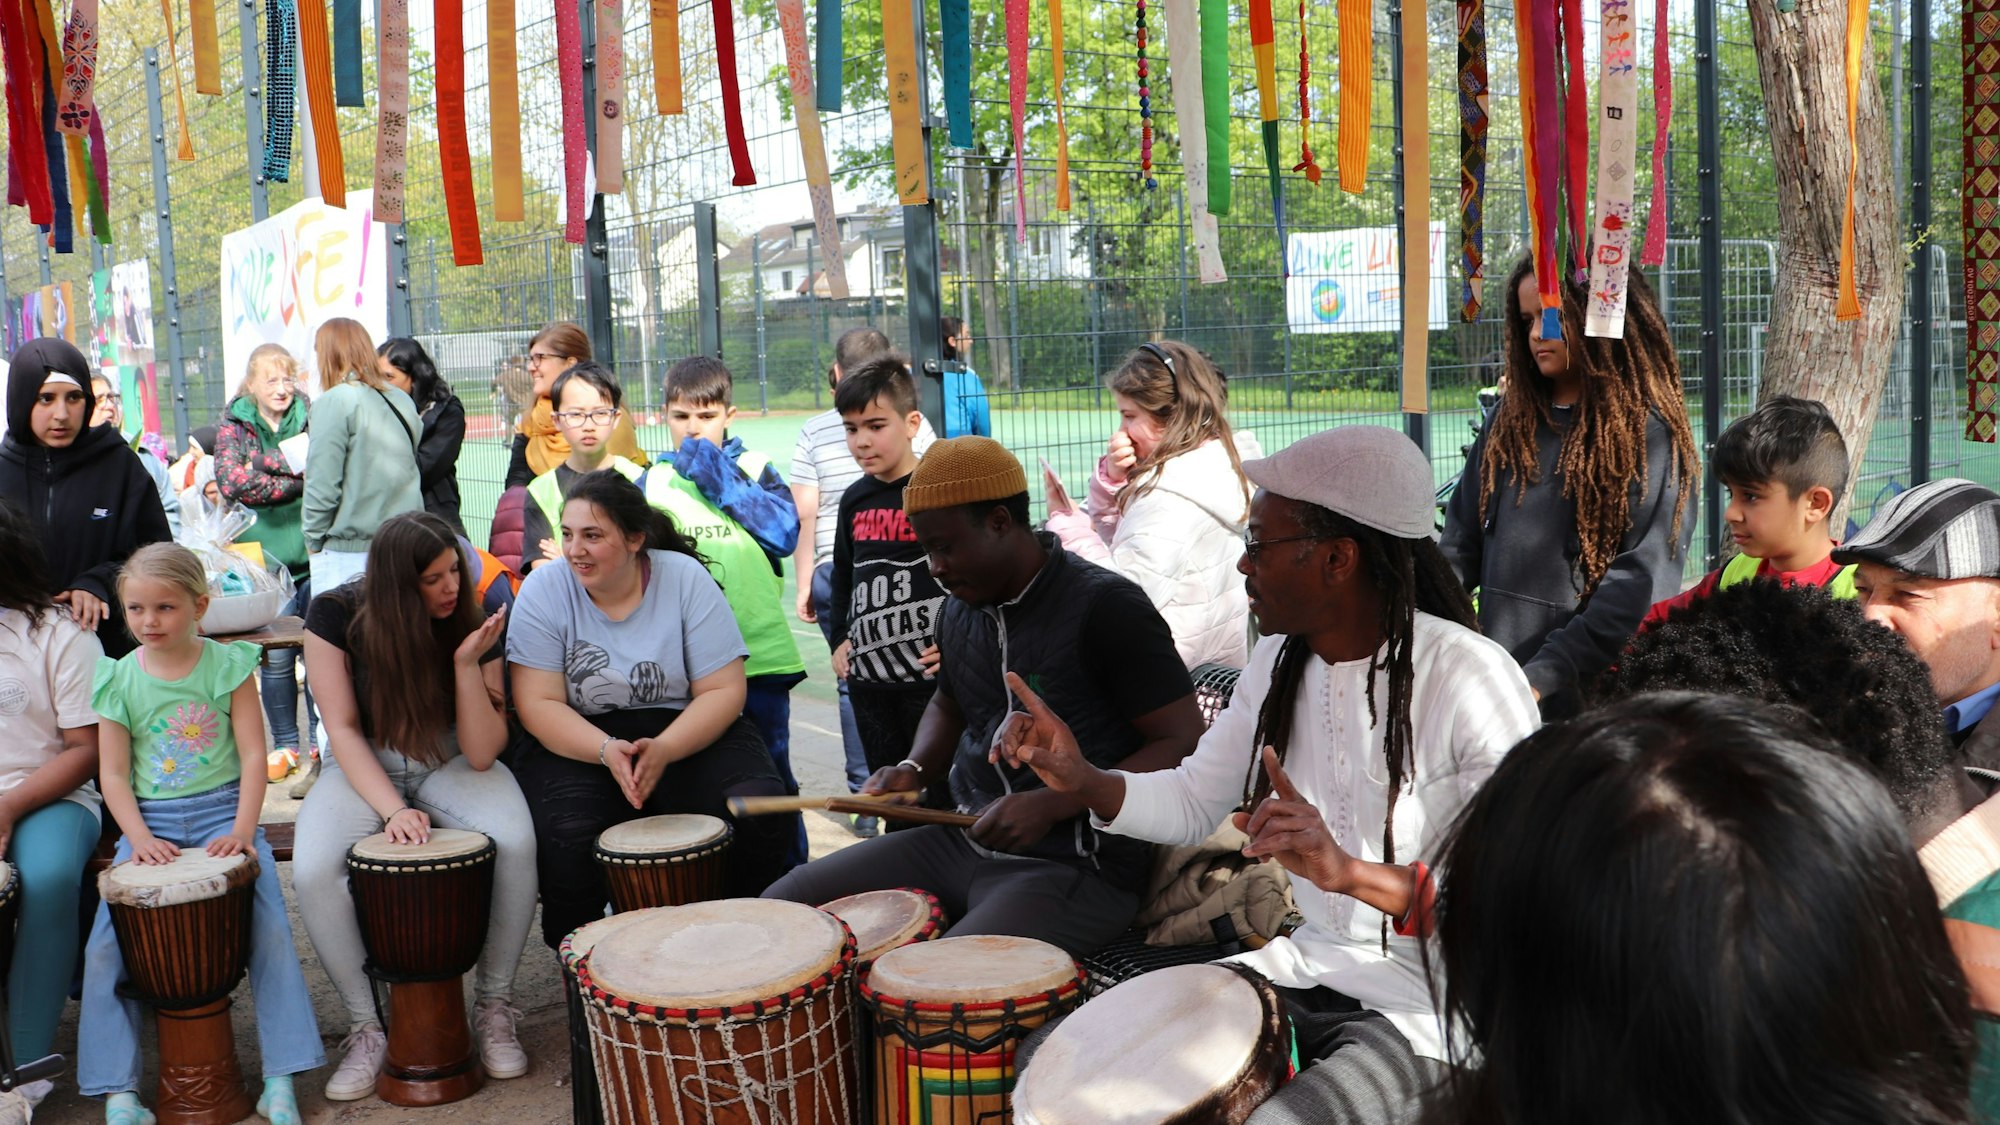 Die Band Mama Afrika trommelt gemeinsam mit Kindern und Jugendlichen unter einem bunt geschmückten Baum.